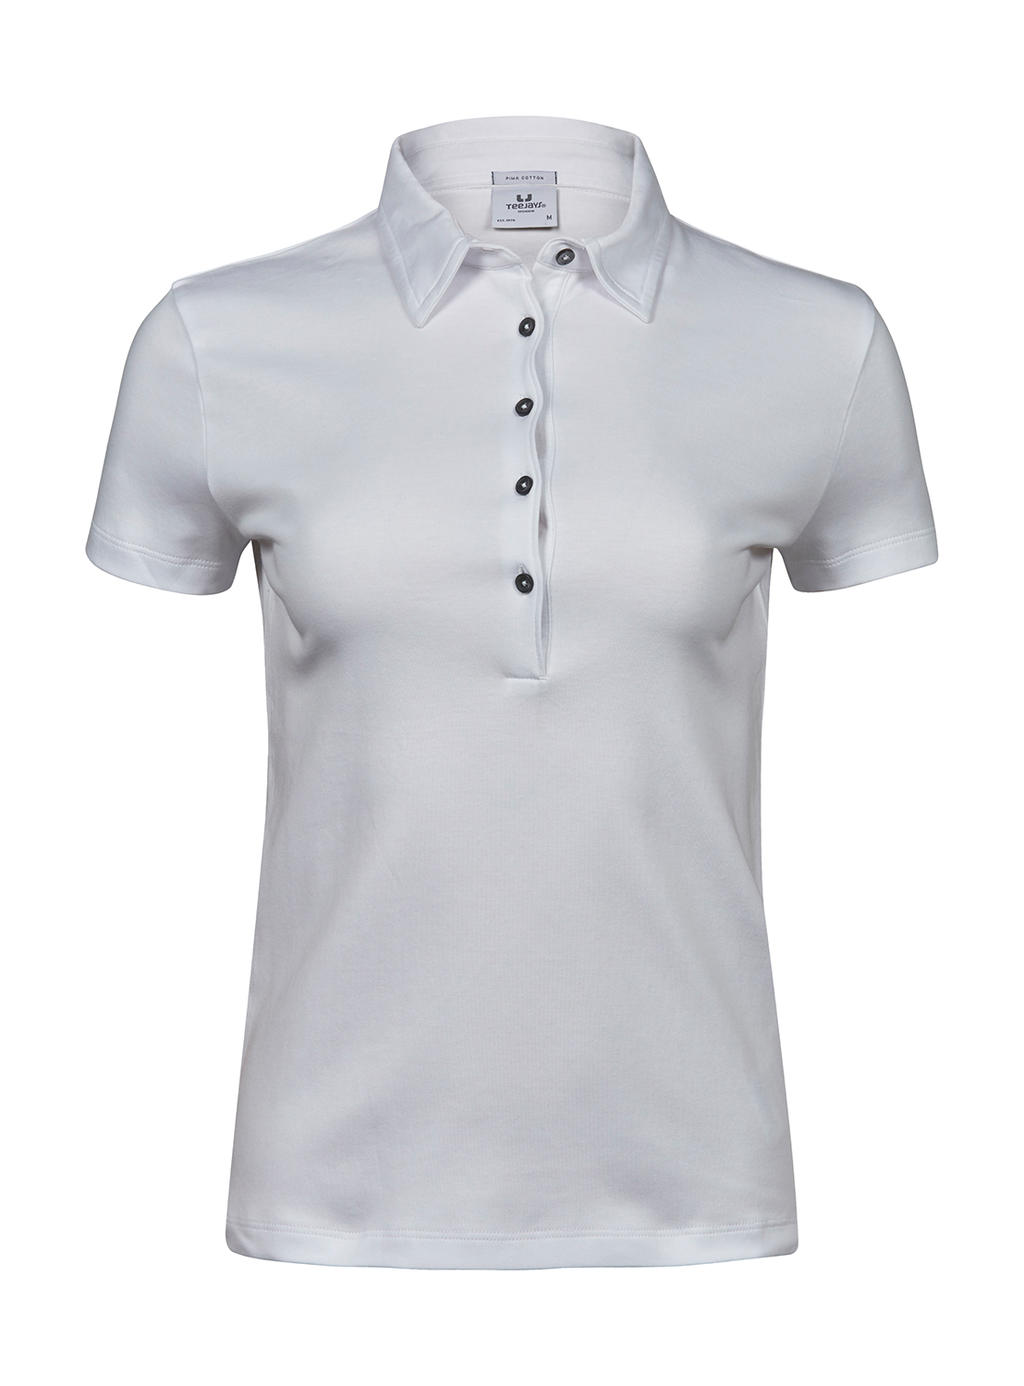  Ladies Pima Cotton Polo in Farbe White